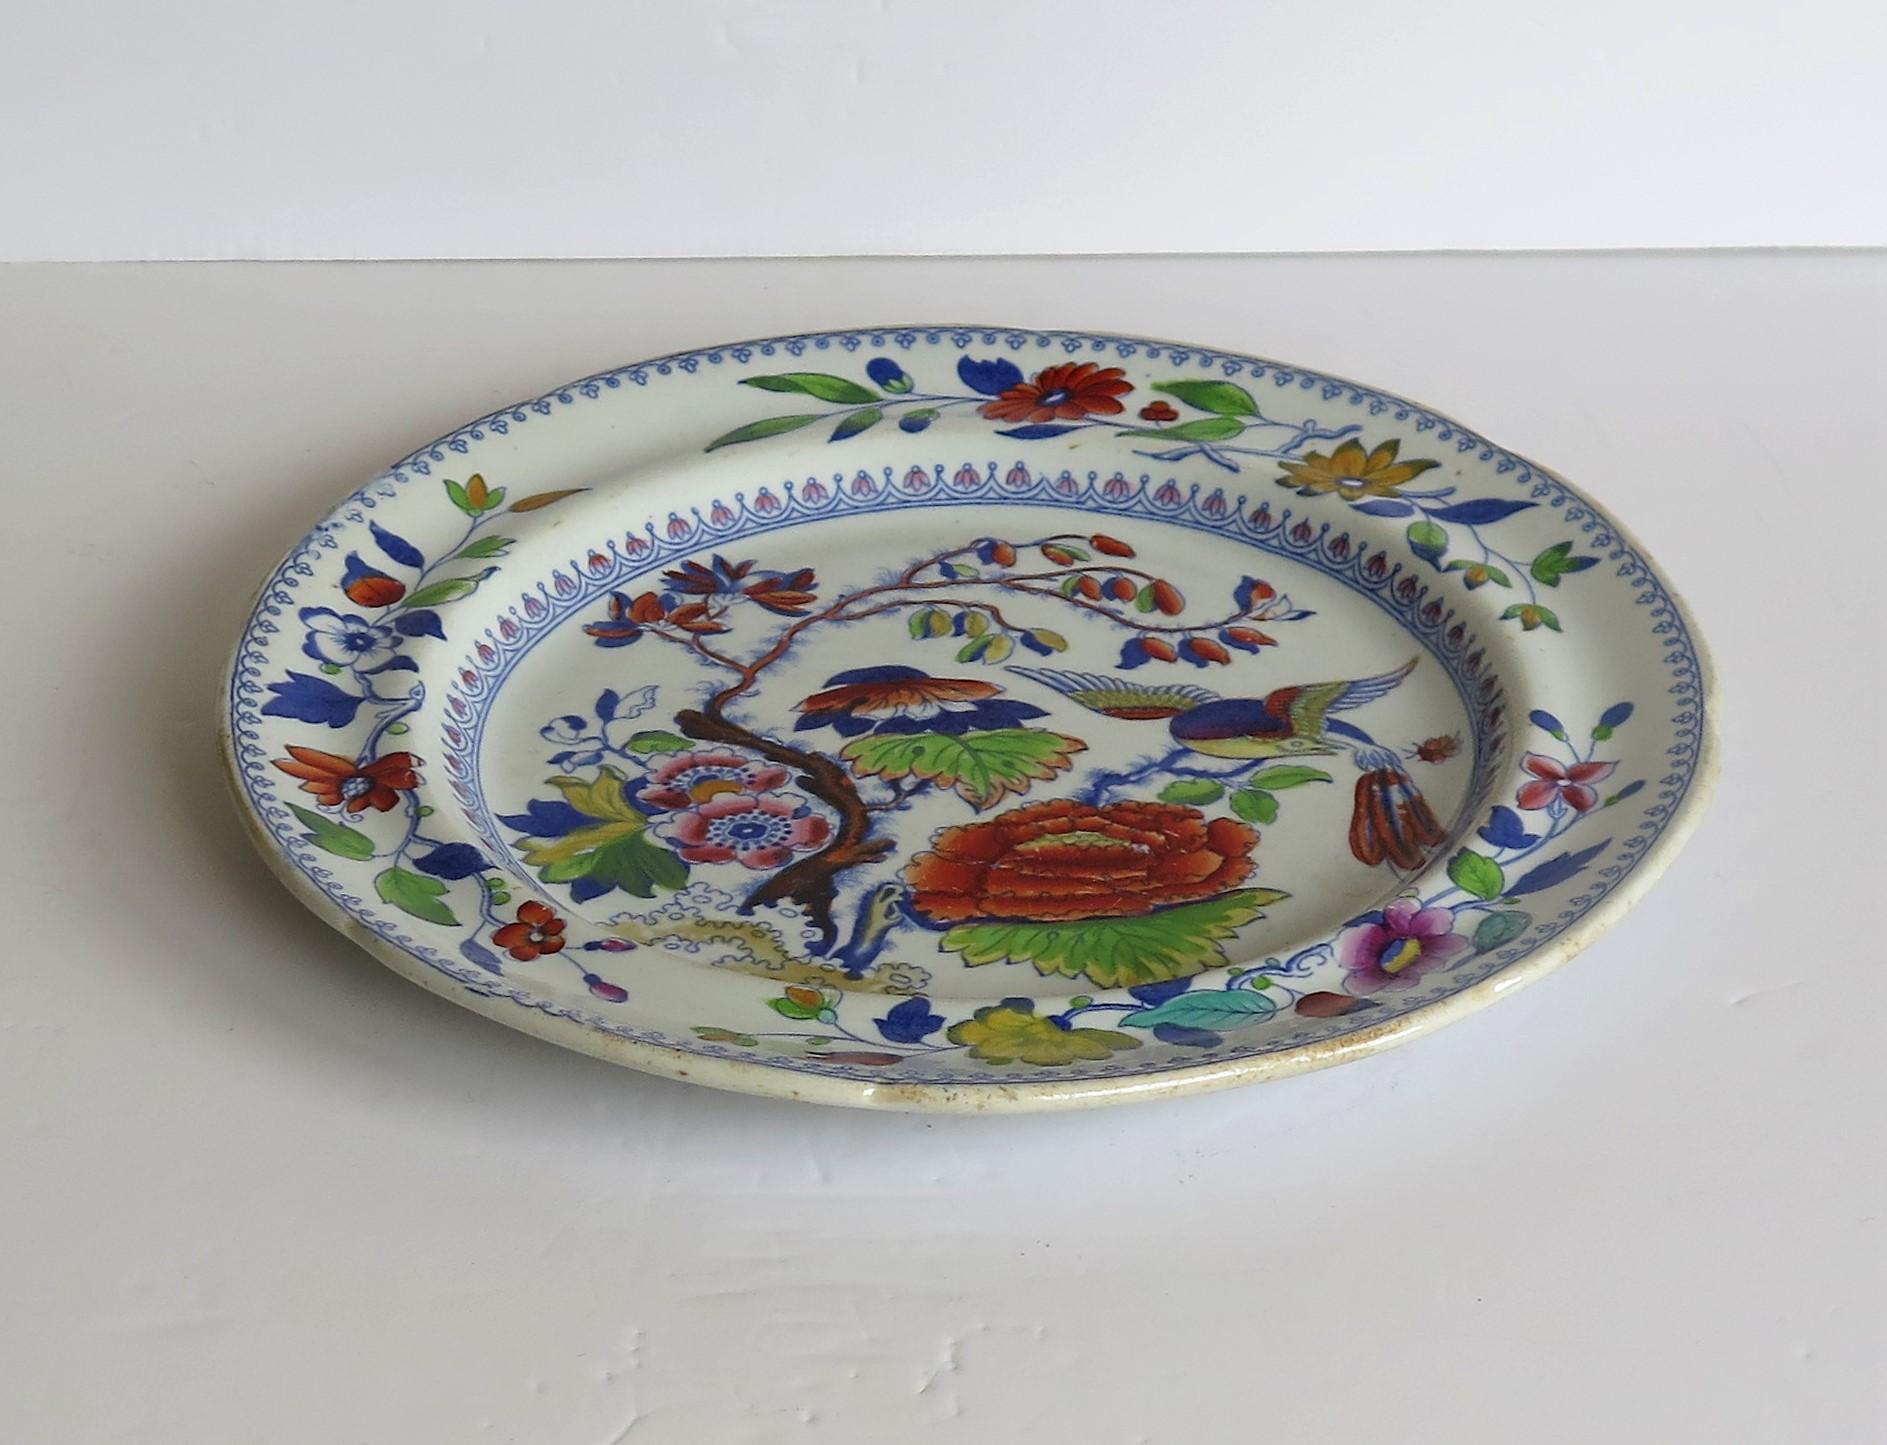 Il s'agit d'une assiette à dîner en pierre de fer de la fin de l'époque géorgienne au motif distinctif de l'oiseau volant, fabriquée par Mason's de Lane Birds, Staffordshire, Angleterre, au début du XIXe siècle, vers 1825.

Il s'agit d'une grande